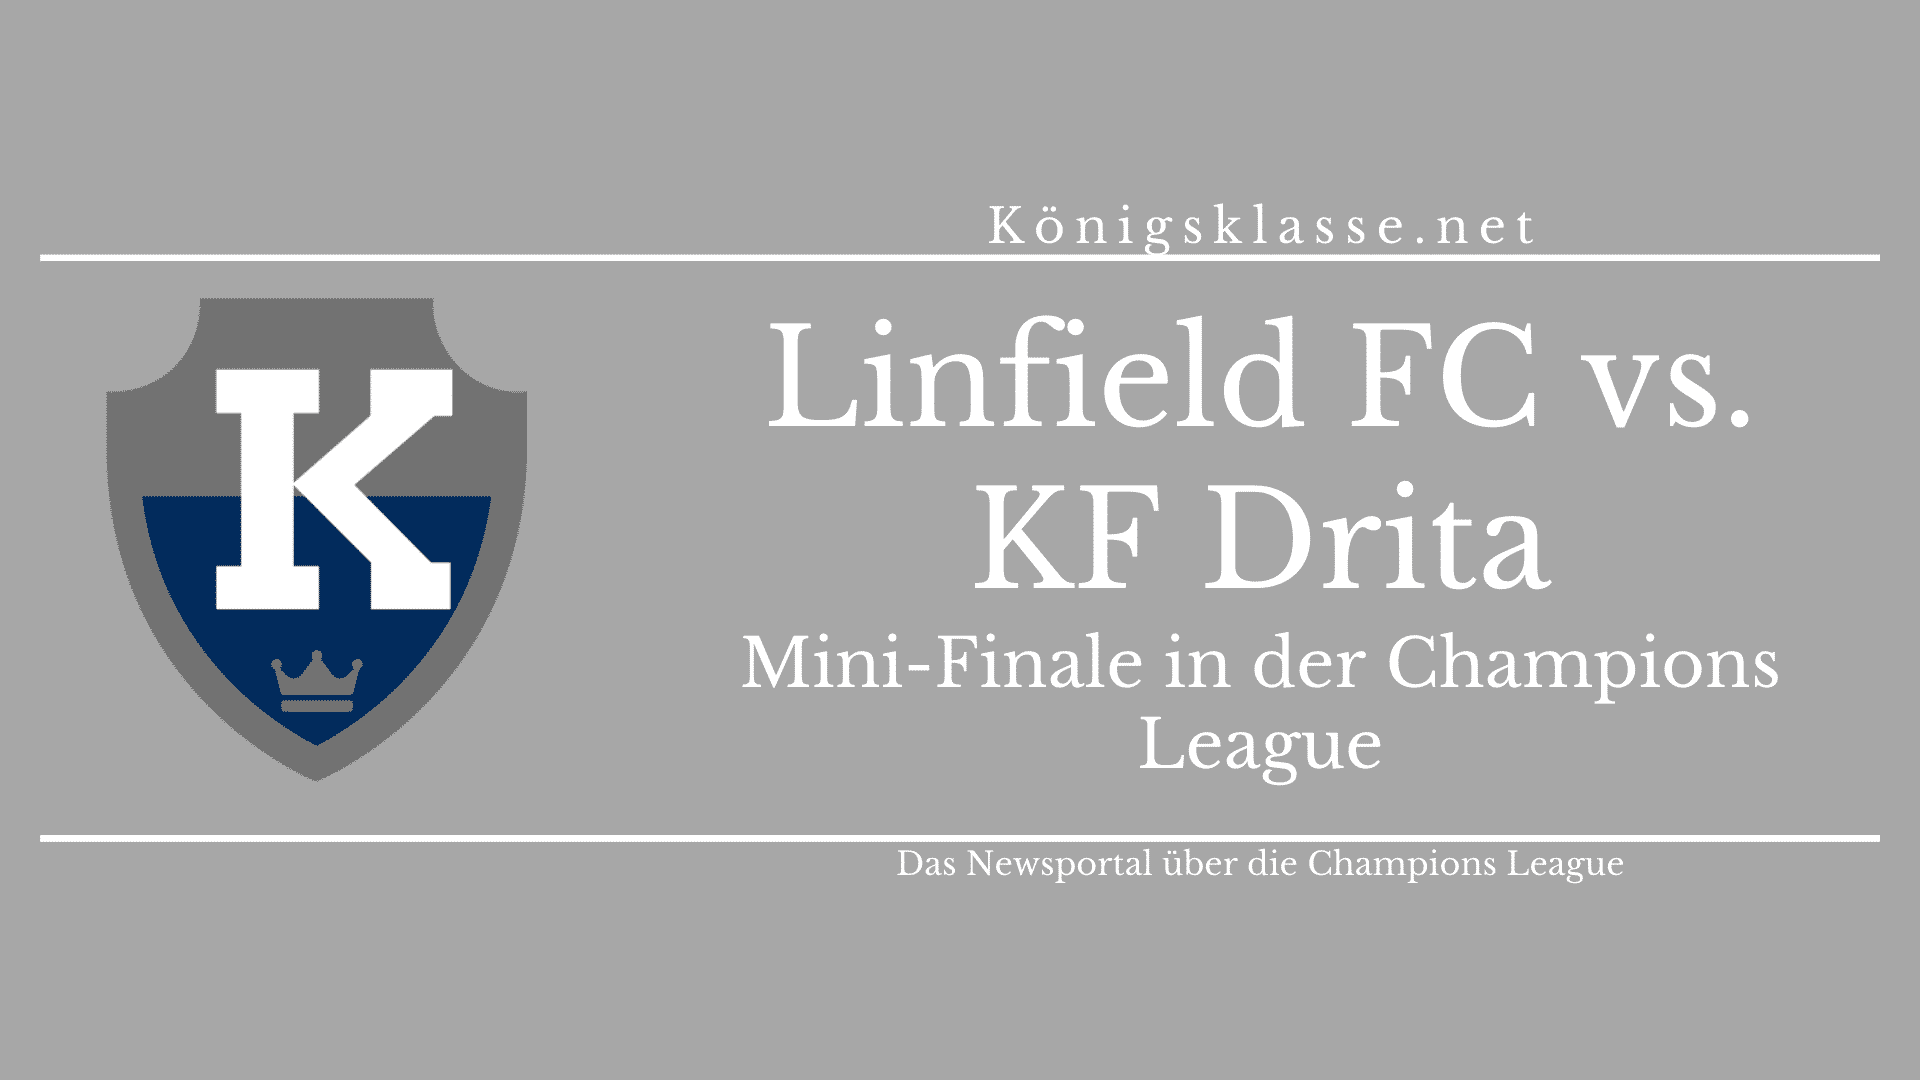 In der Vorrunde der Champions League treffen Linfield FC und KF Drita im Finale aufeinander.